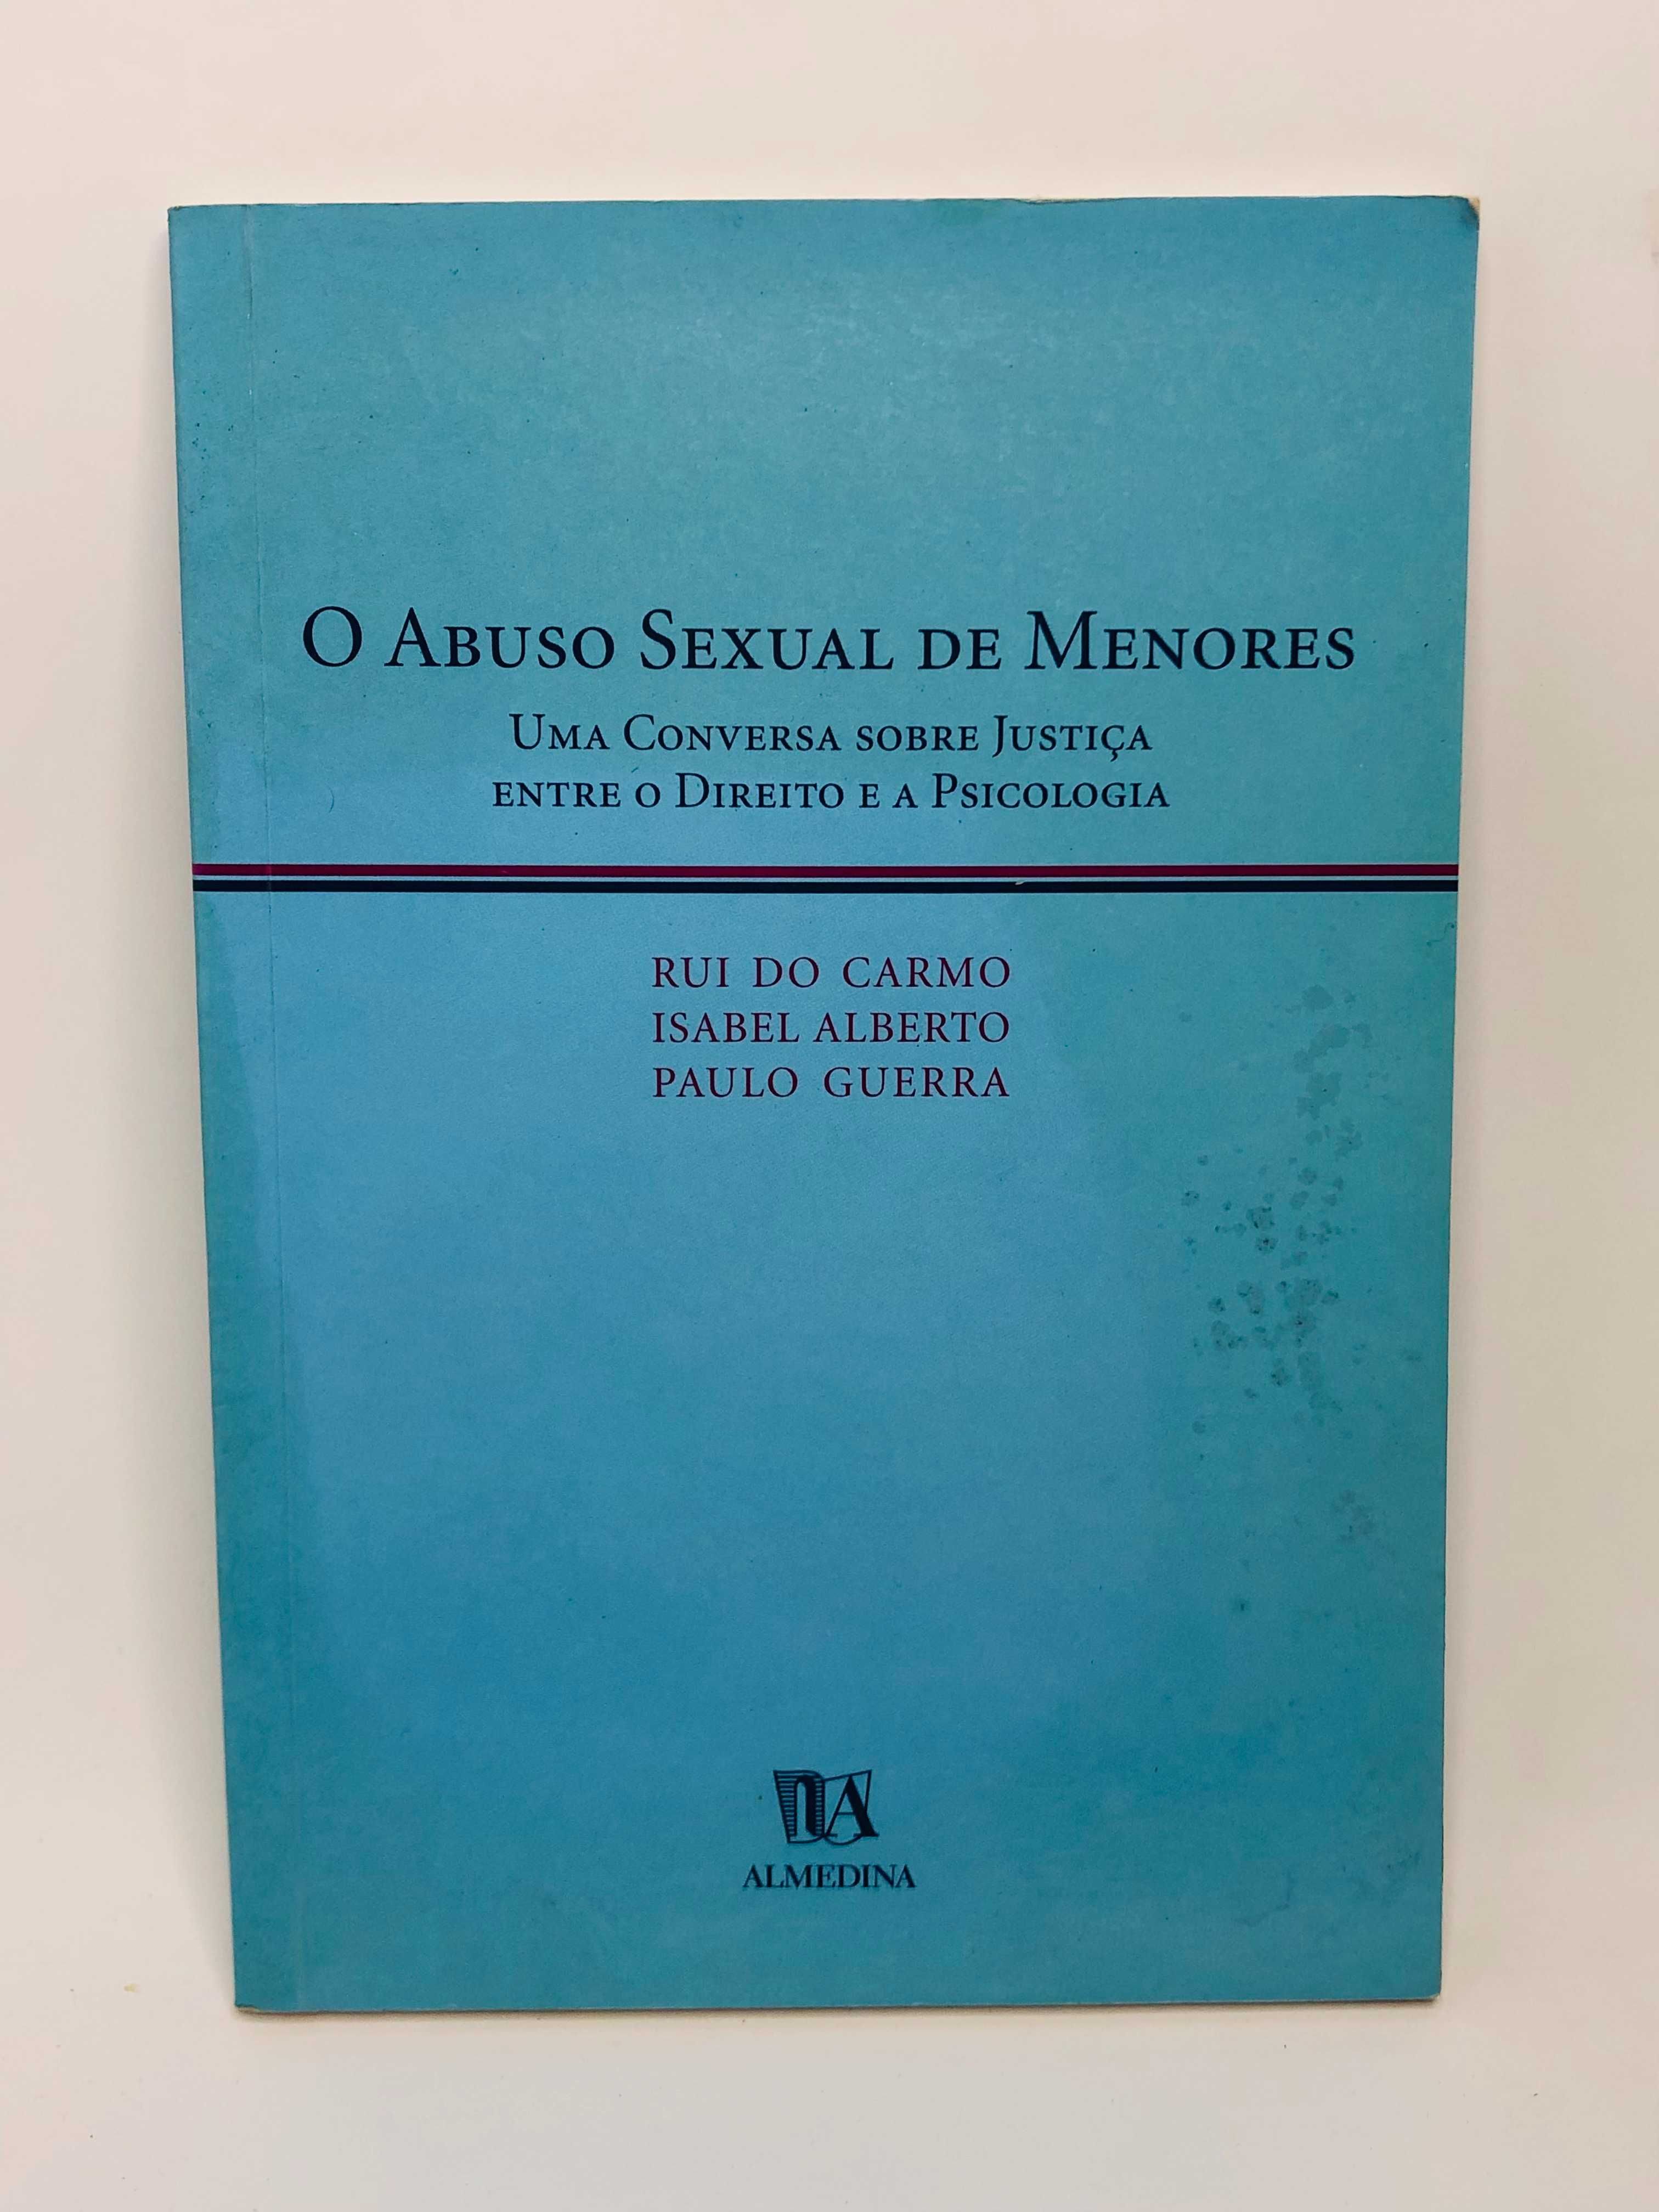 O Abuso Sexual de Menores - Rui do Carmo, Isabel Alberto, Paulo Guerra